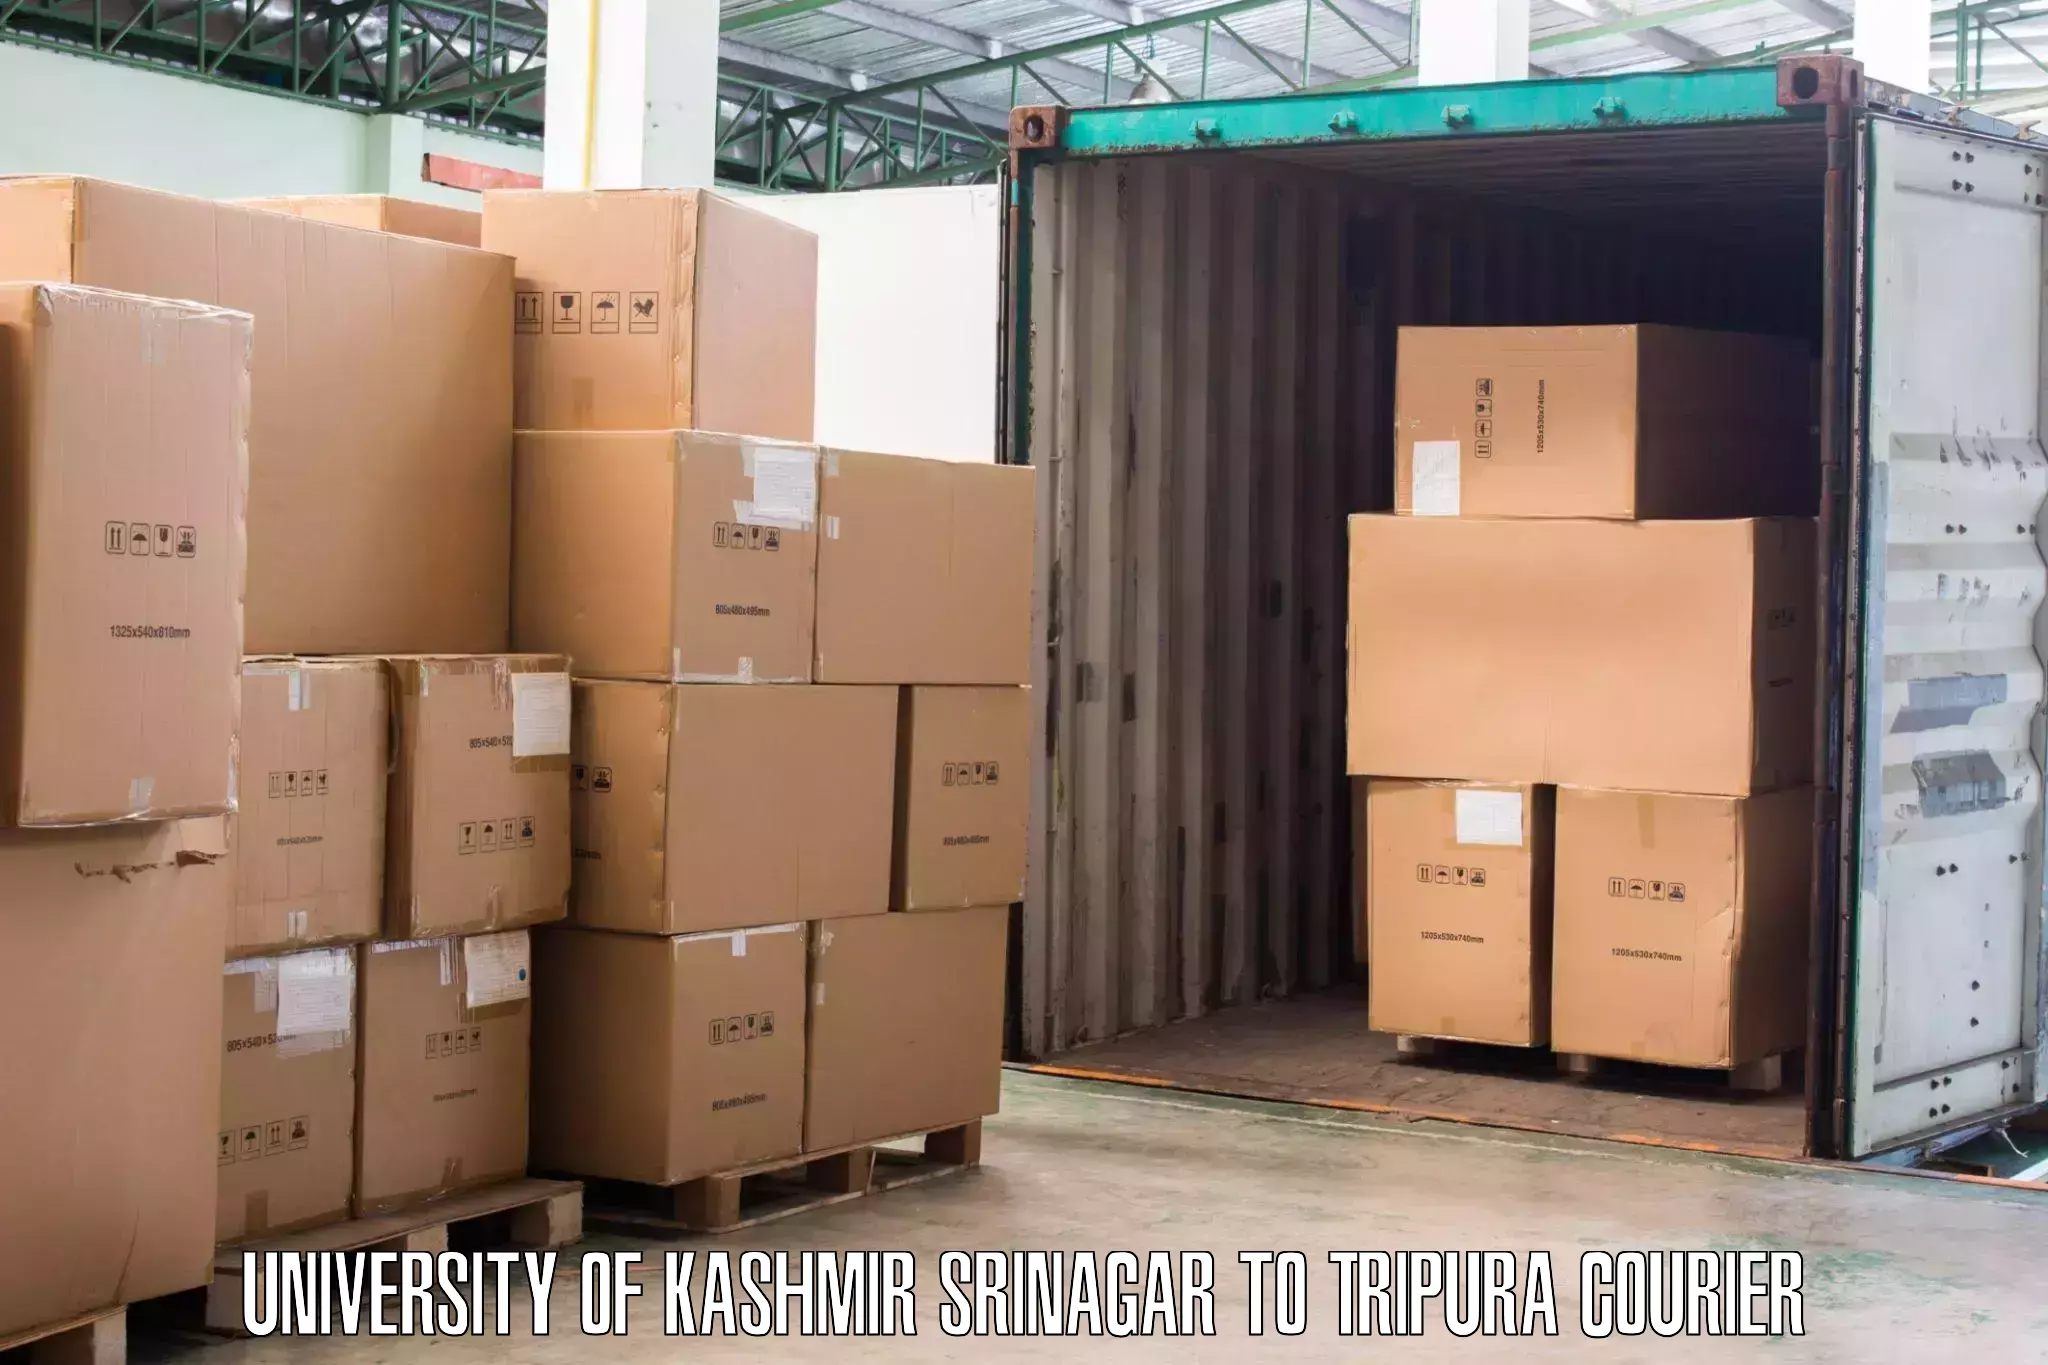 Furniture moving experts University of Kashmir Srinagar to Bishalgarh